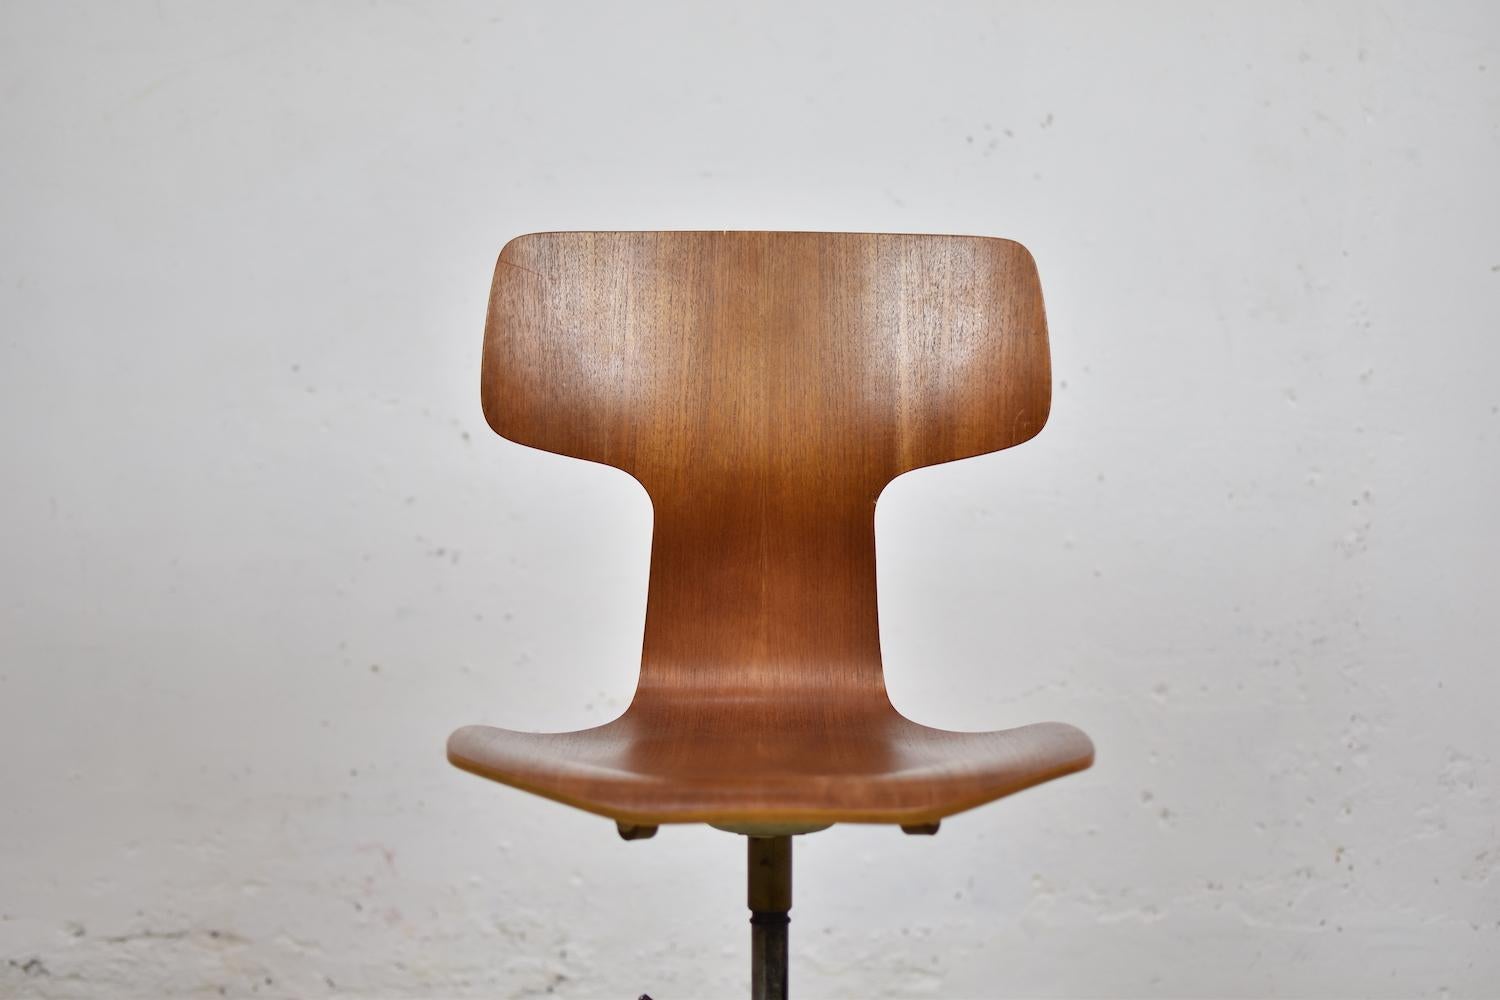 Scandinavian Modern 'Hammer' Desk Chair Designed by Arne Jacobsen for Fritz Hansen, Denmark, 1950s